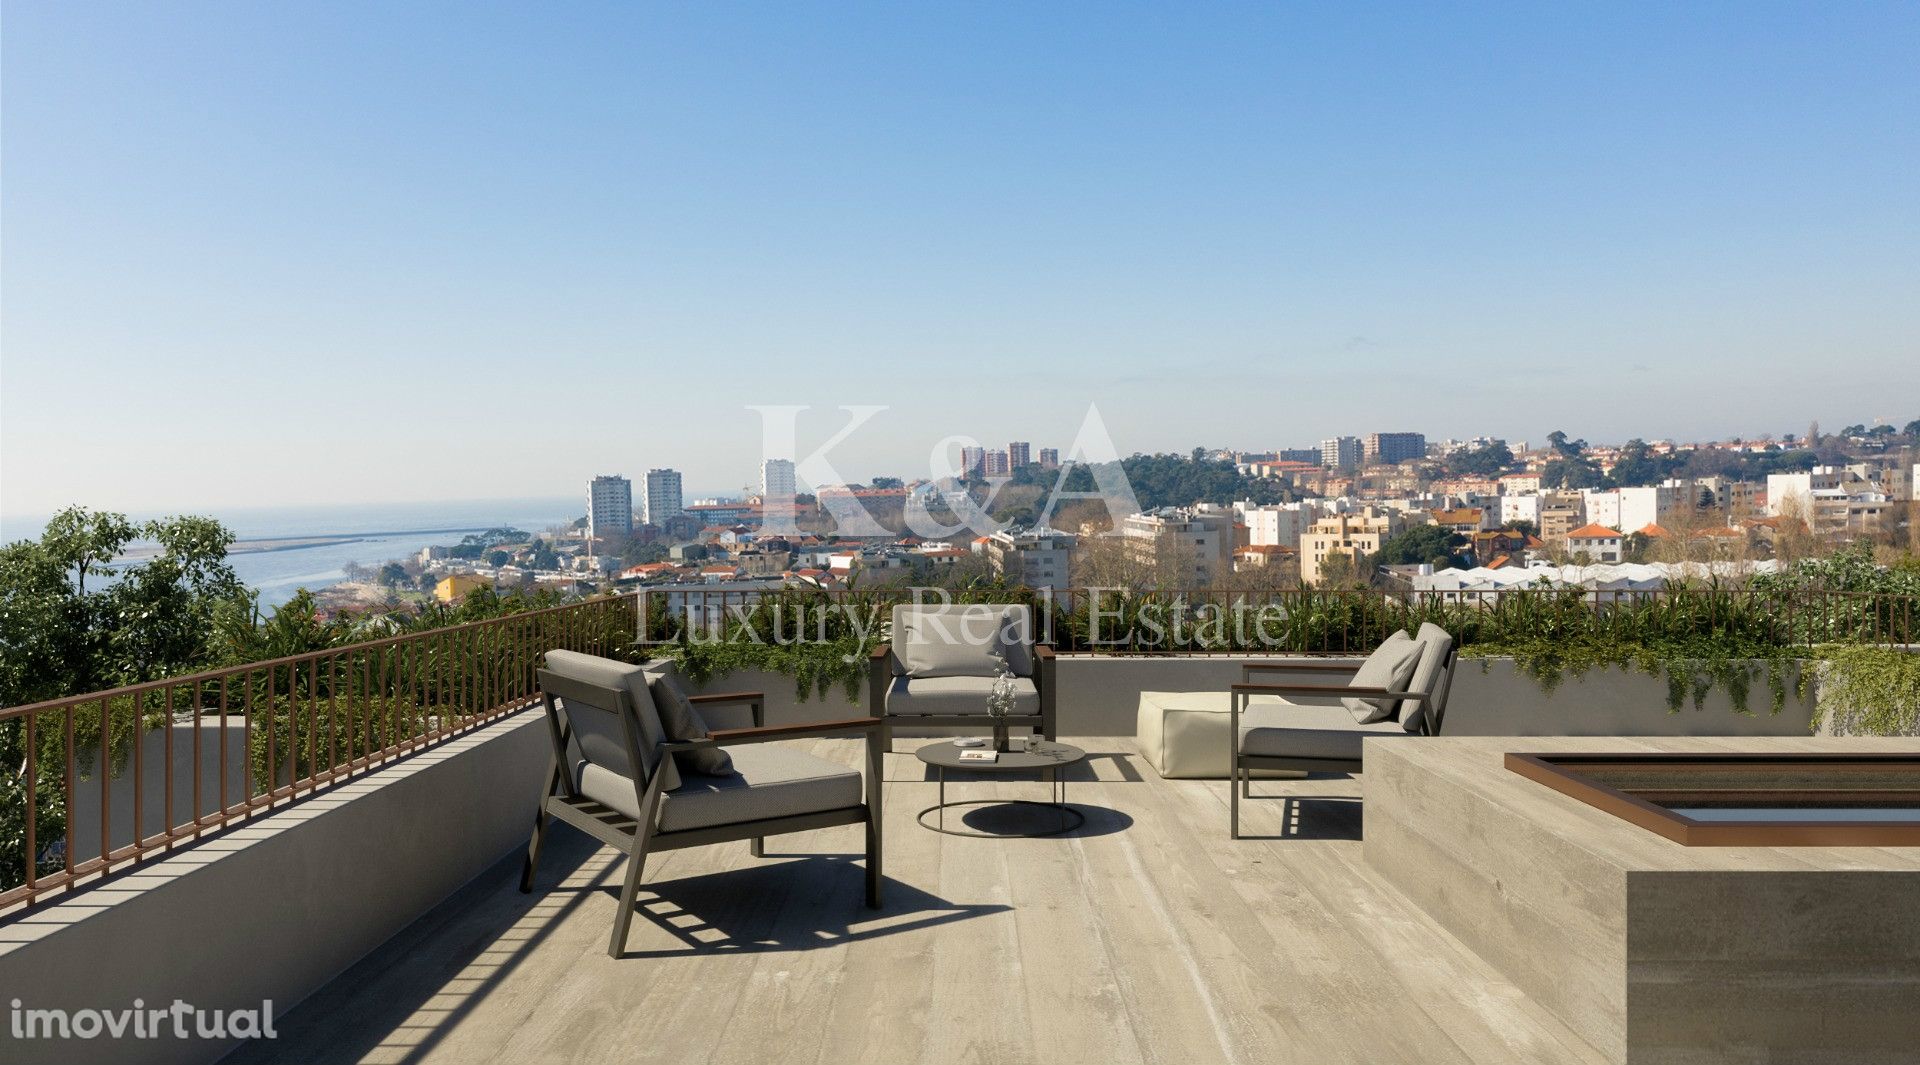 Moradia V4 num condomínio de luxo com vistas sob o Rio Douro e o Mar